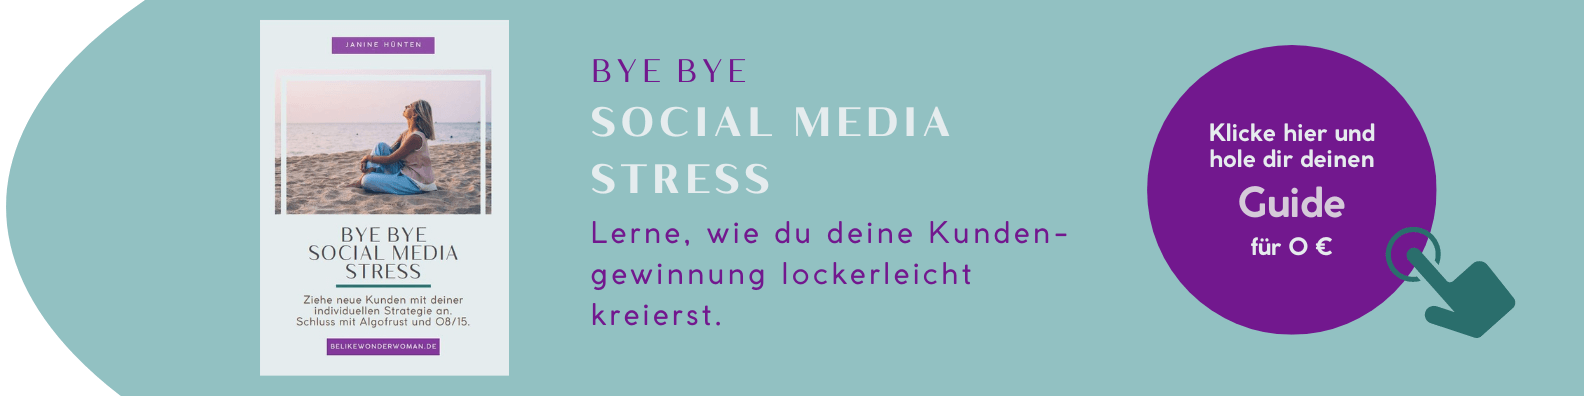 Banner mit der Vorstellung eines Guides, der bei der Kundengewinnung unterstützt mit dem Titel "Bye Bye Social Media Stress".